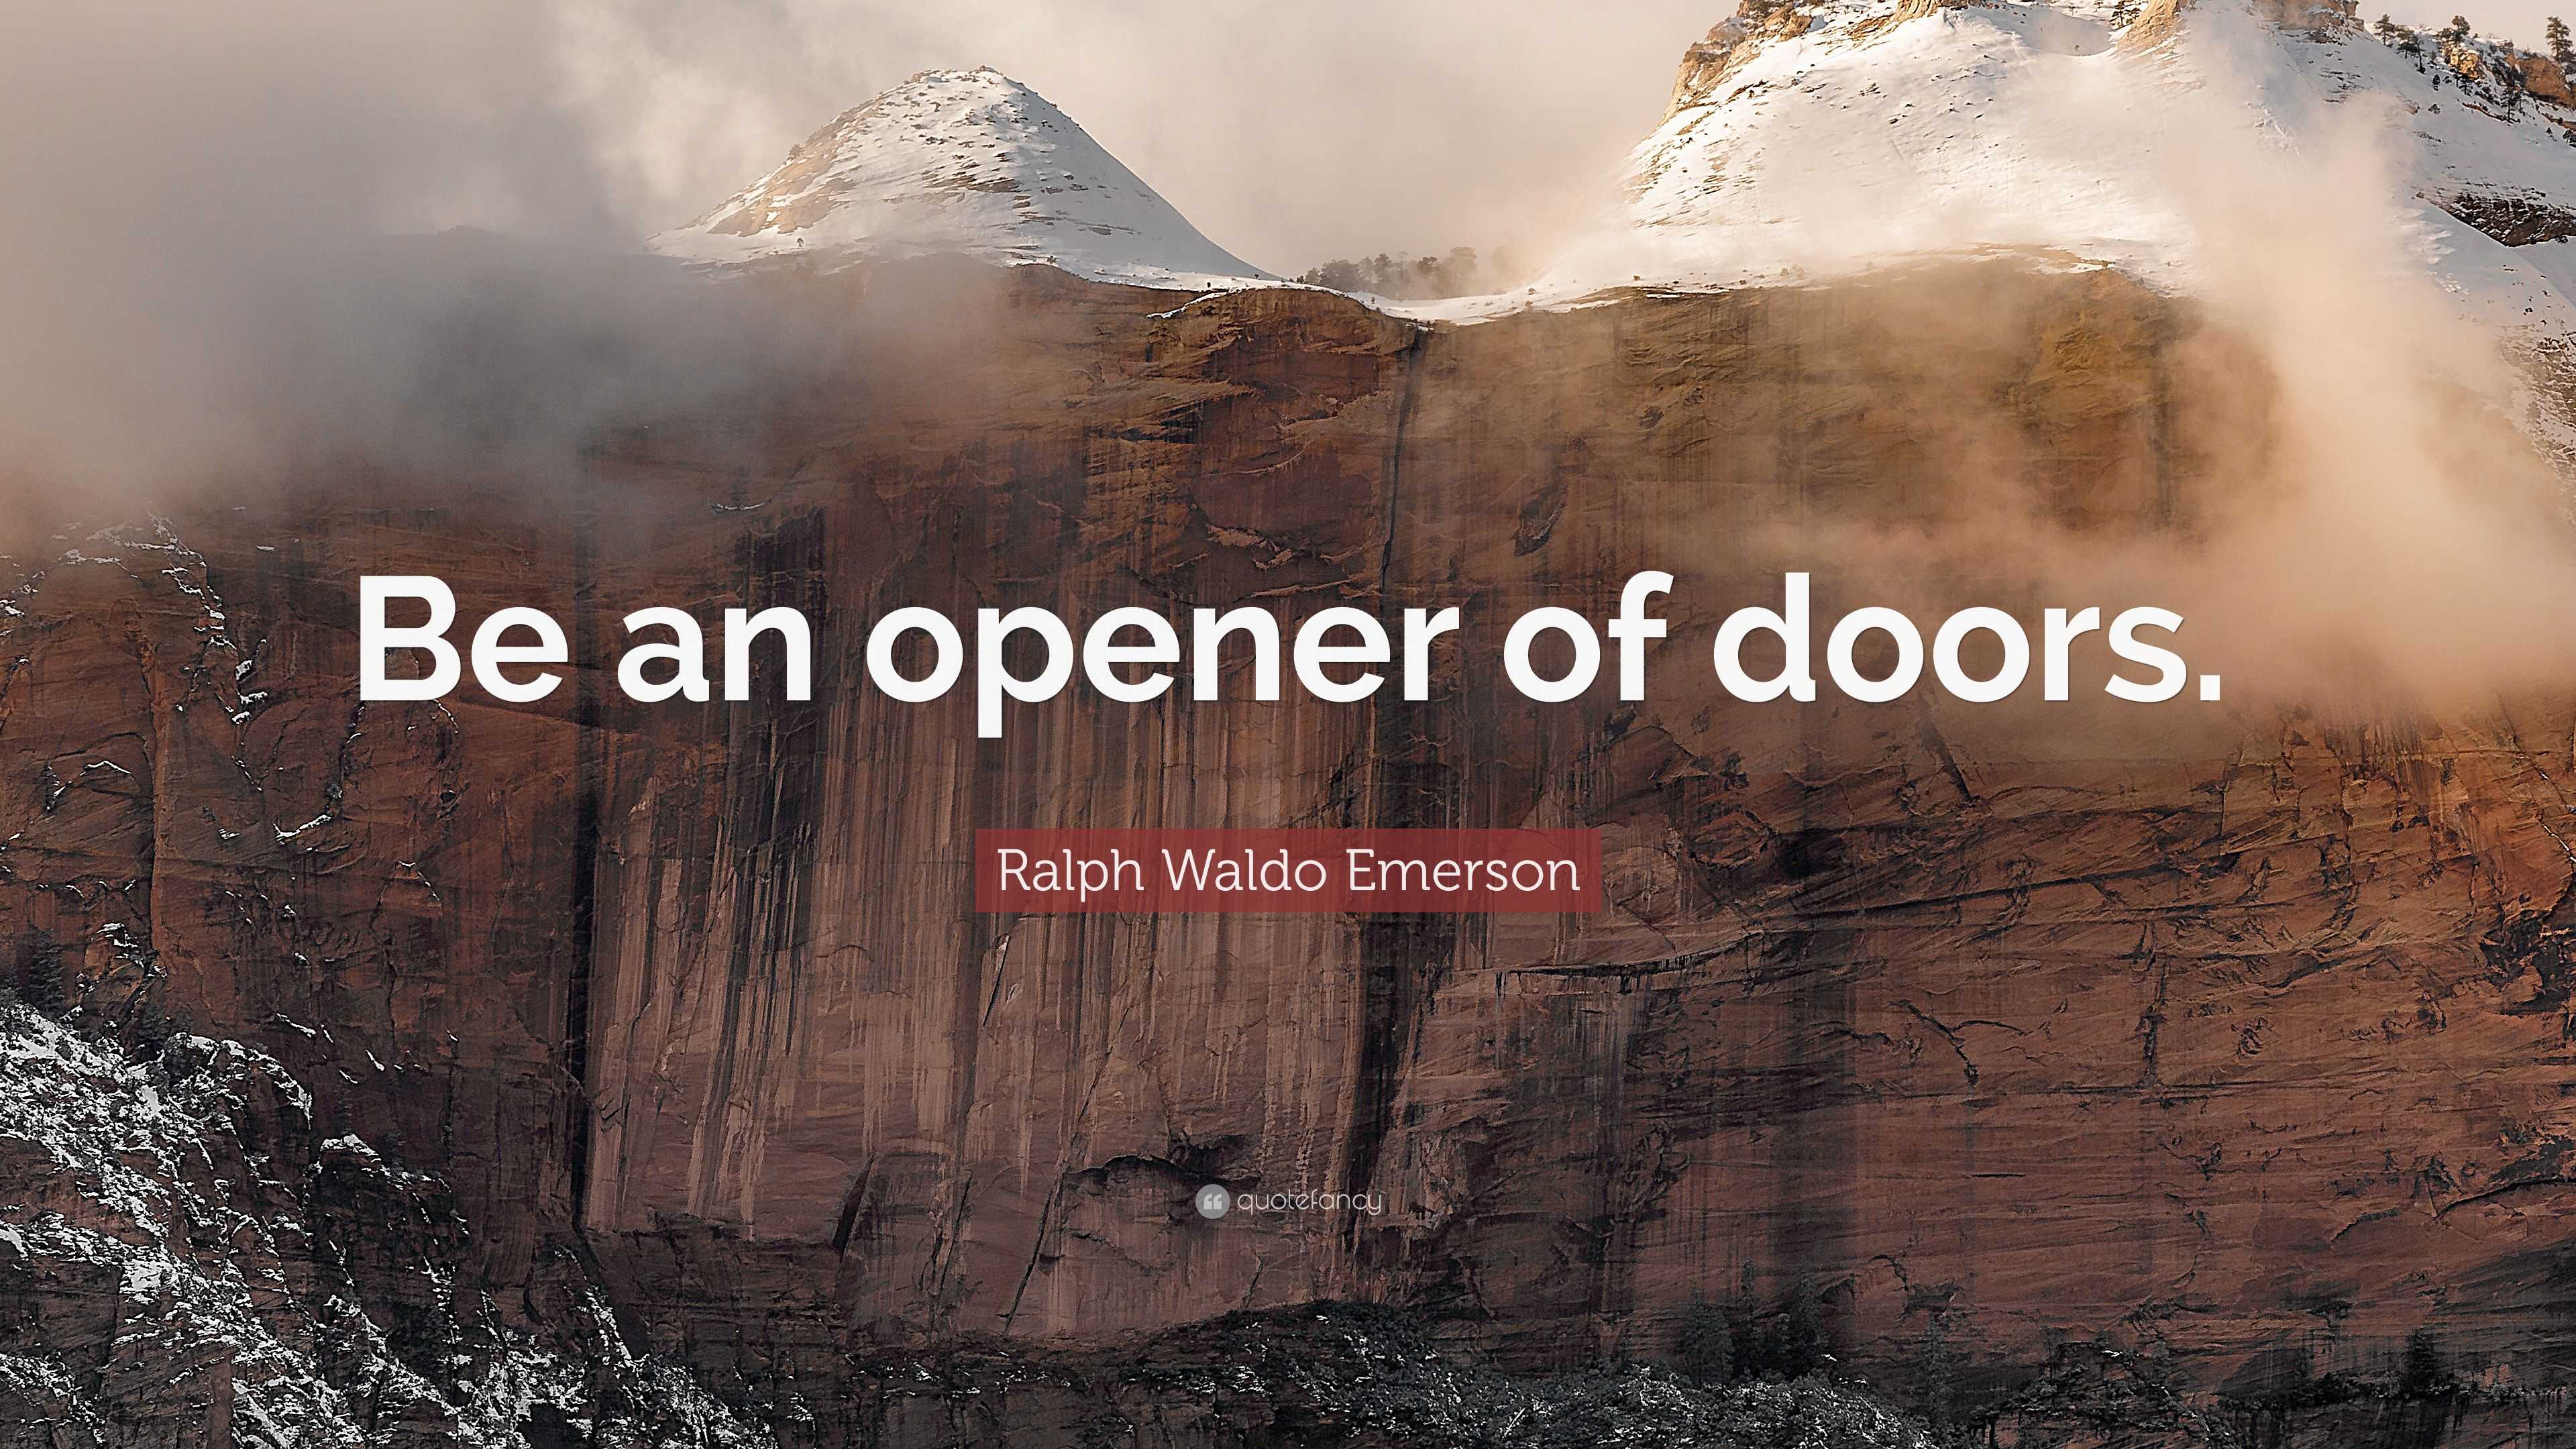 https://quotefancy.com/media/wallpaper/3840x2160/2341270-Ralph-Waldo-Emerson-Quote-Be-an-opener-of-doors.jpg